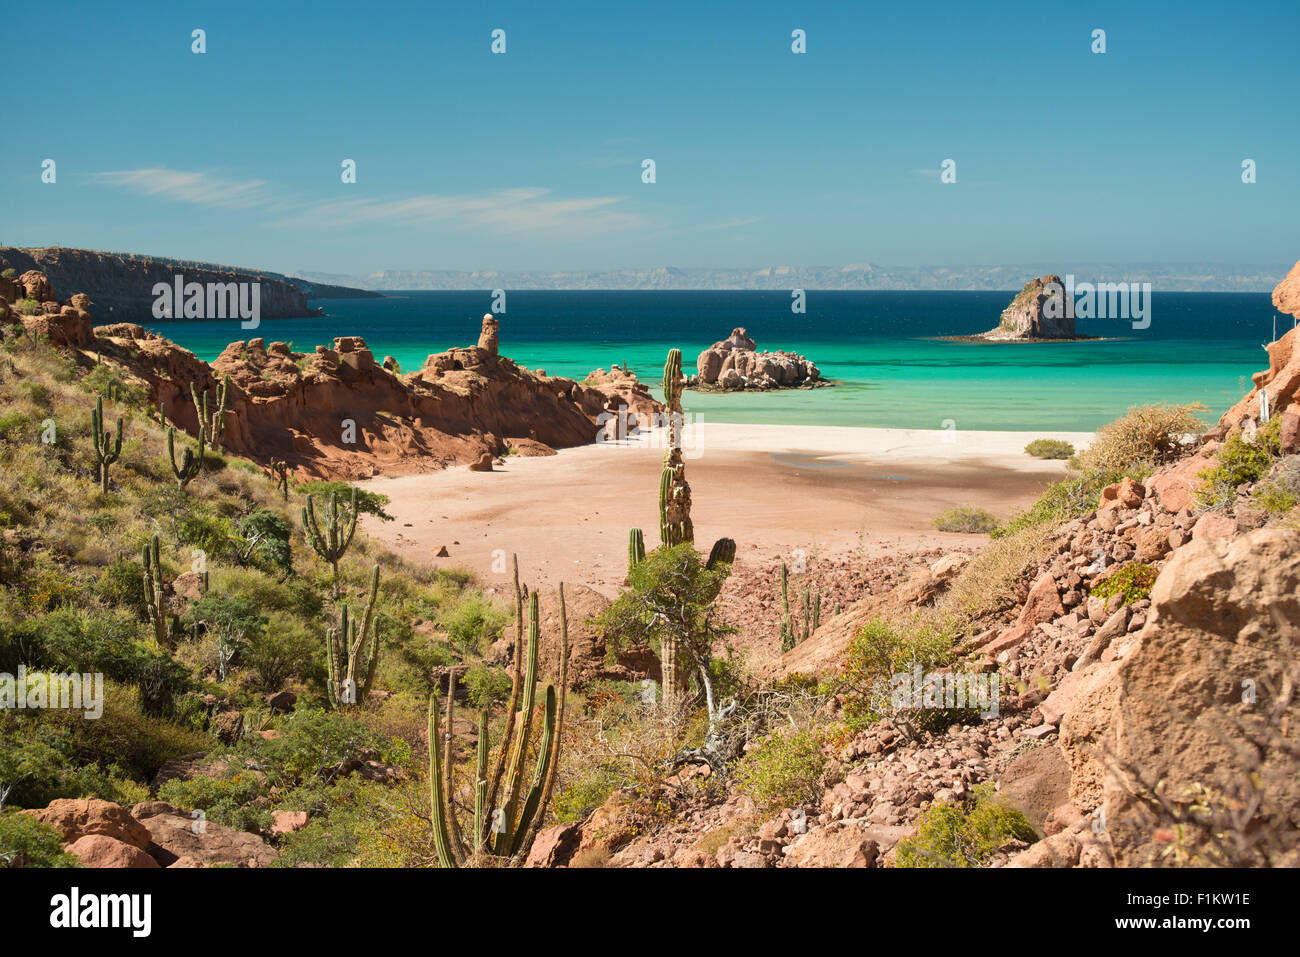 Mexique, Baja, Lapaz, Espiritu Santo. Cactus en premier plan, de l'eau dans le fond. Banque D'Images